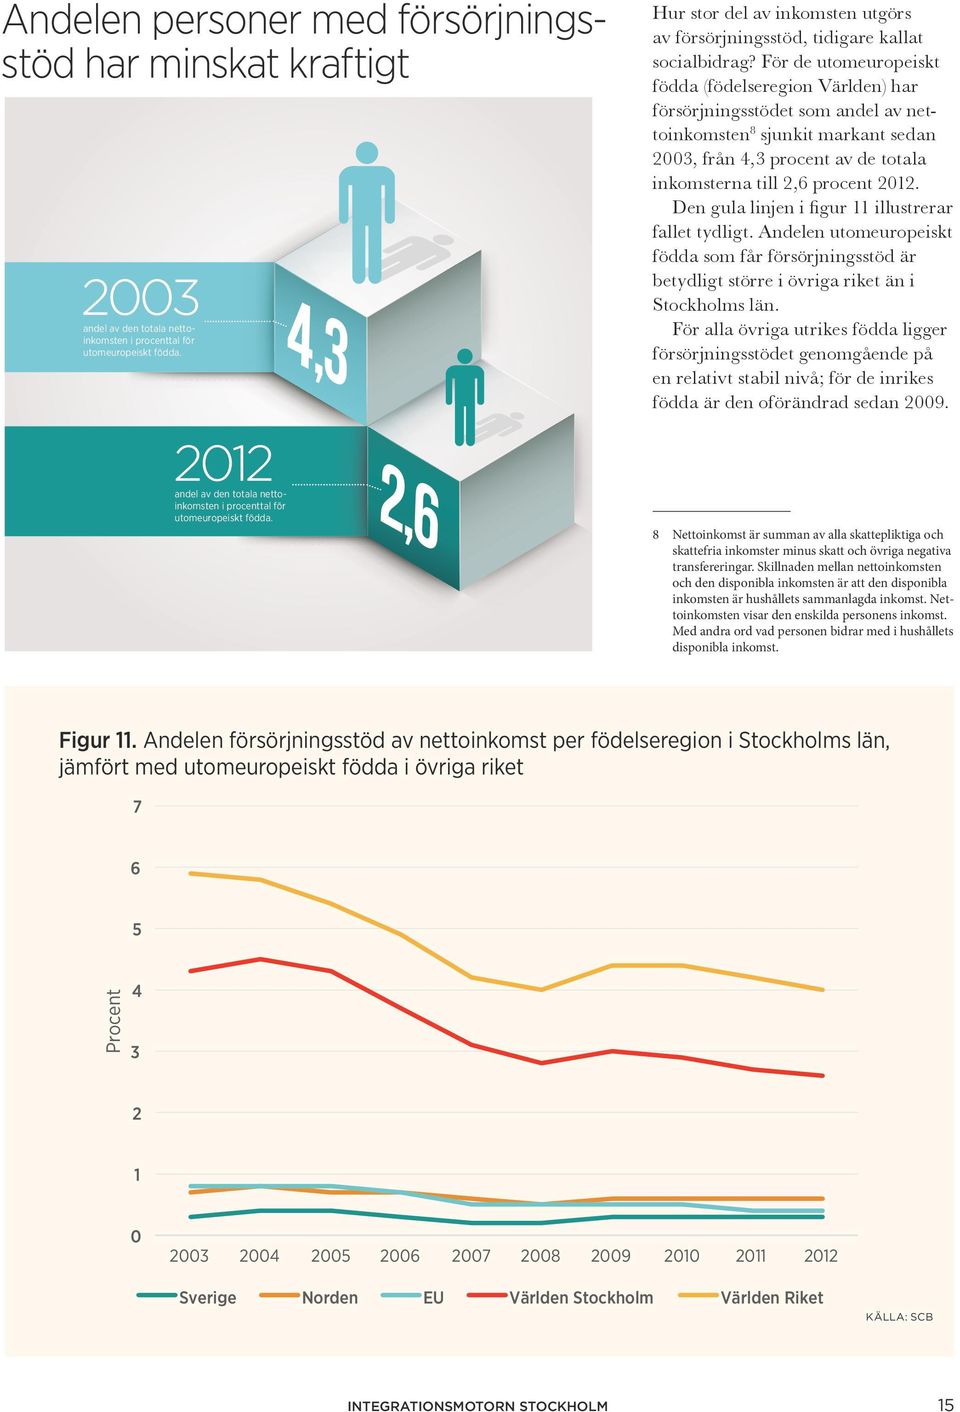 För de utomeuropeiskt födda (födelseregion Världen) har försörjningsstödet som andel av nettoinkomsten 8 sjunkit markant sedan 2003, från 4,3 procent av de totala inkomsterna till 2,6 procent 2012.